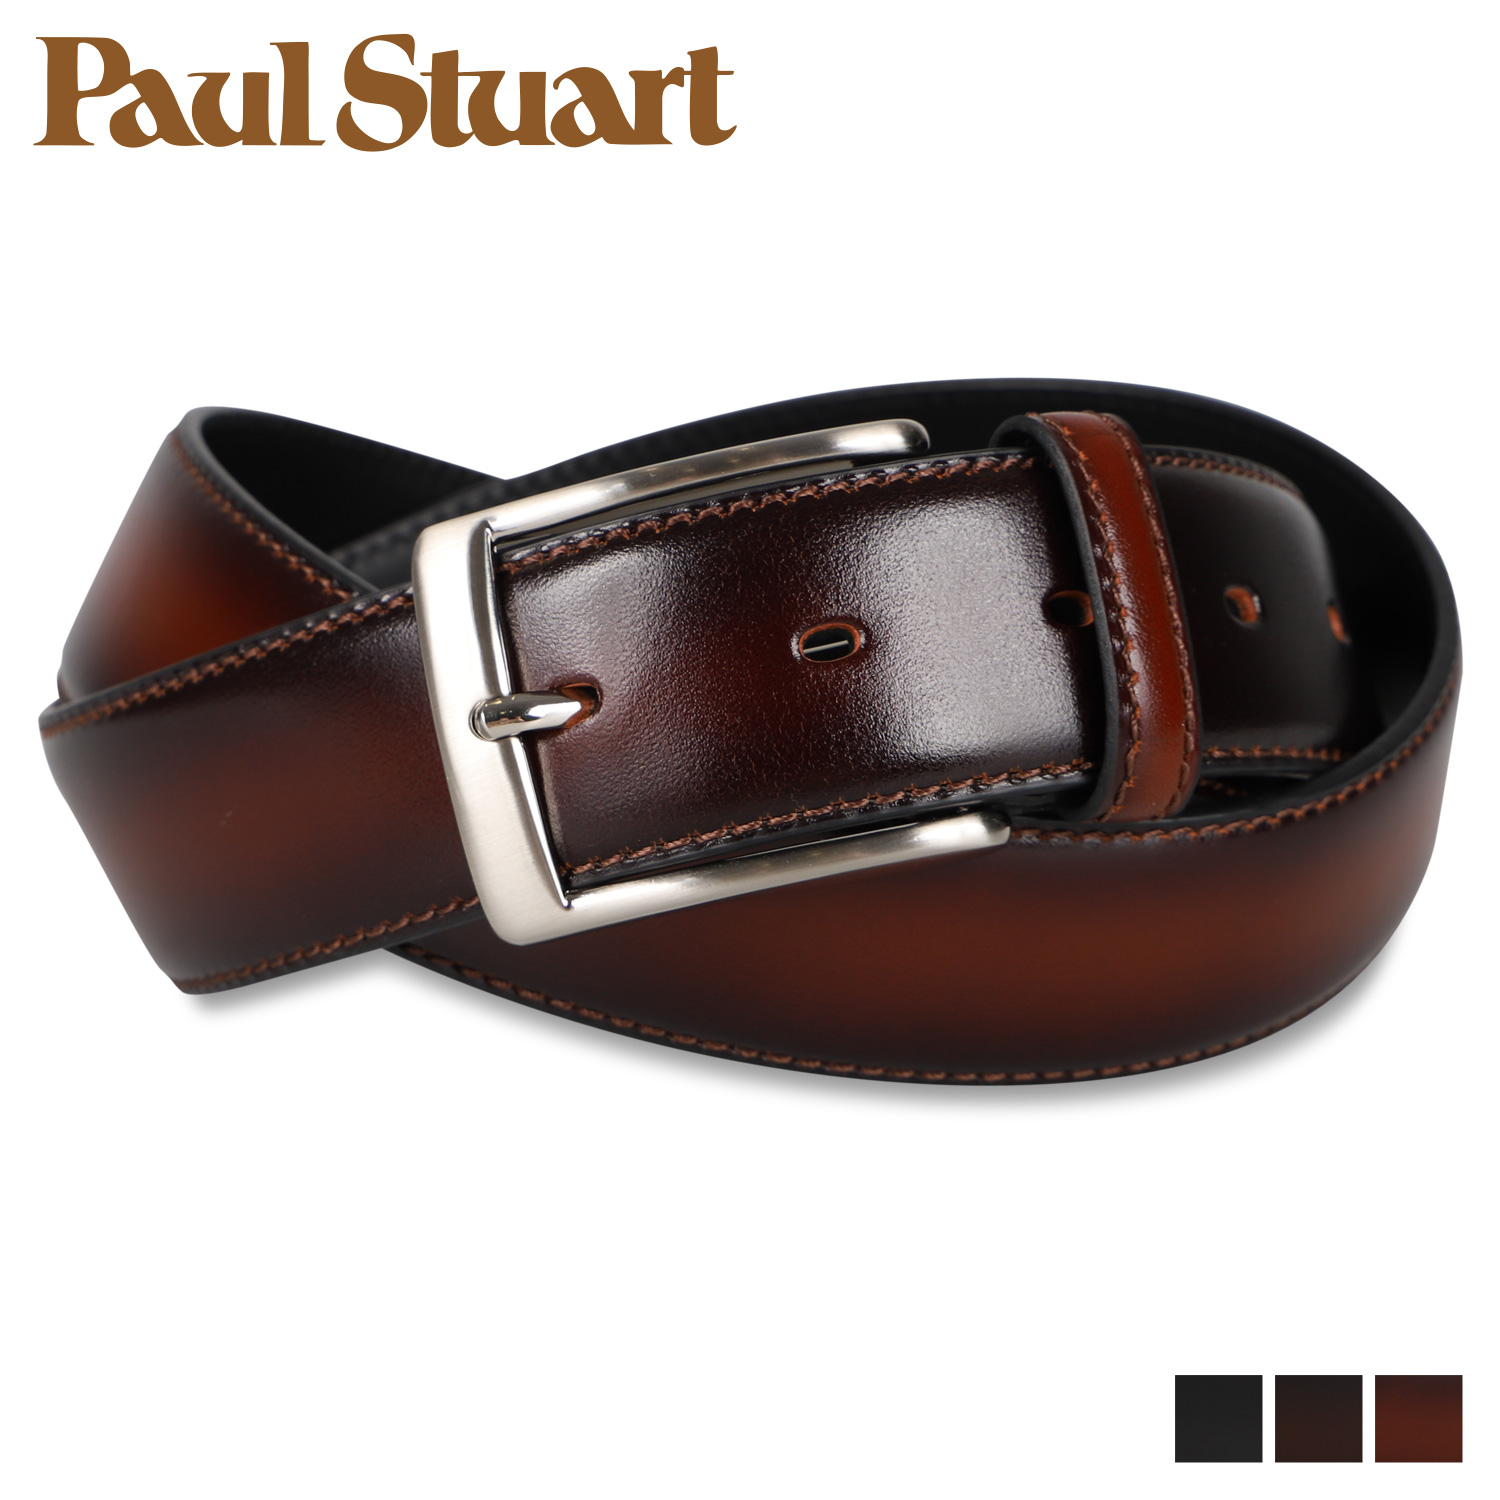 ポールスチュアート Paul Stuart ベルト メンズ 本革 BELT ブラック ダークブラウン ブラウン 黒 SB02610